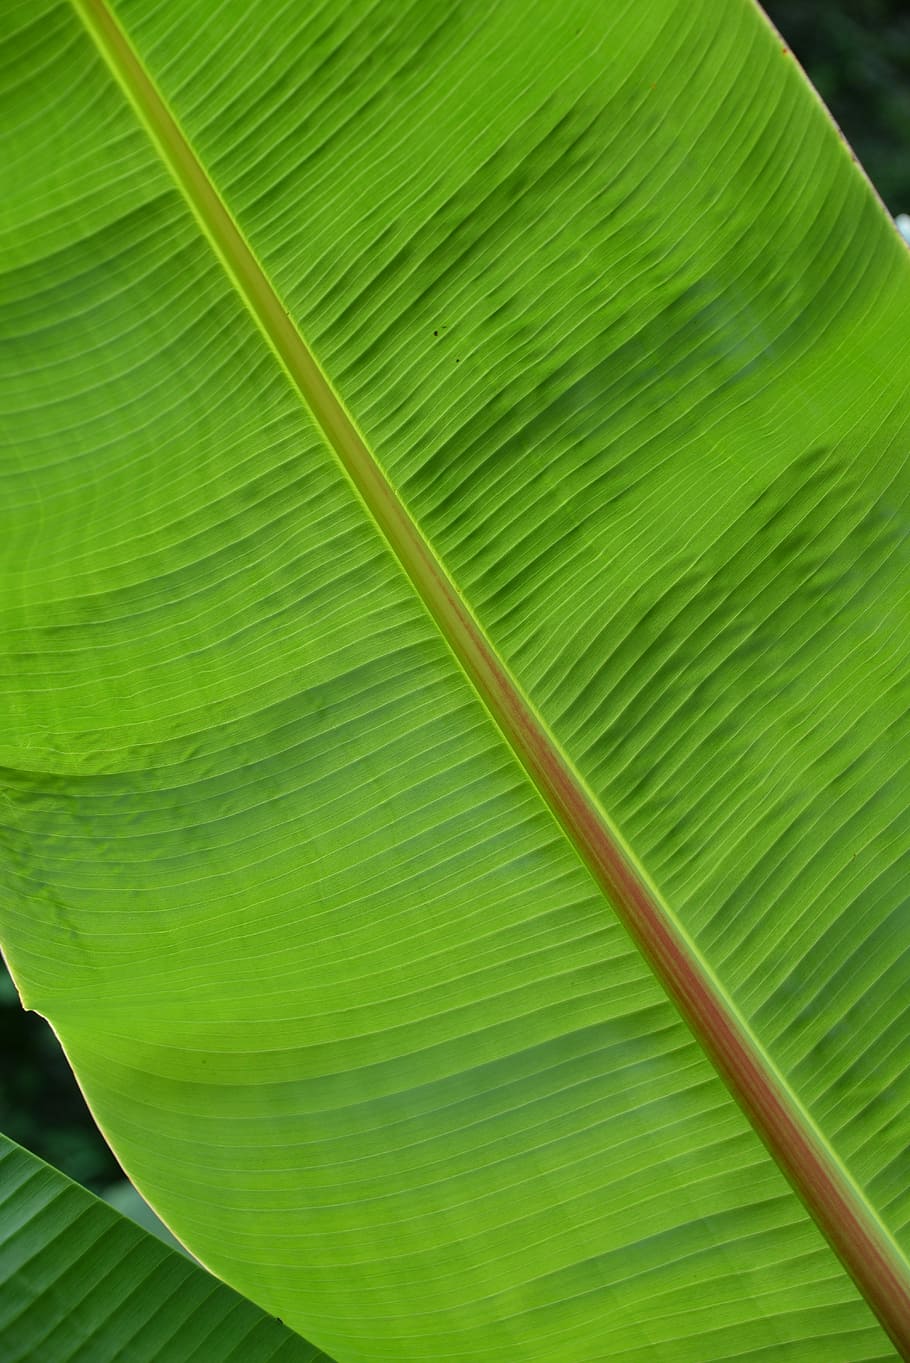 Folha, Estrutura, Planta, Palmeira, verde, folha de palmeira, verde claro, folhas de palmeira, samambaia, fundo